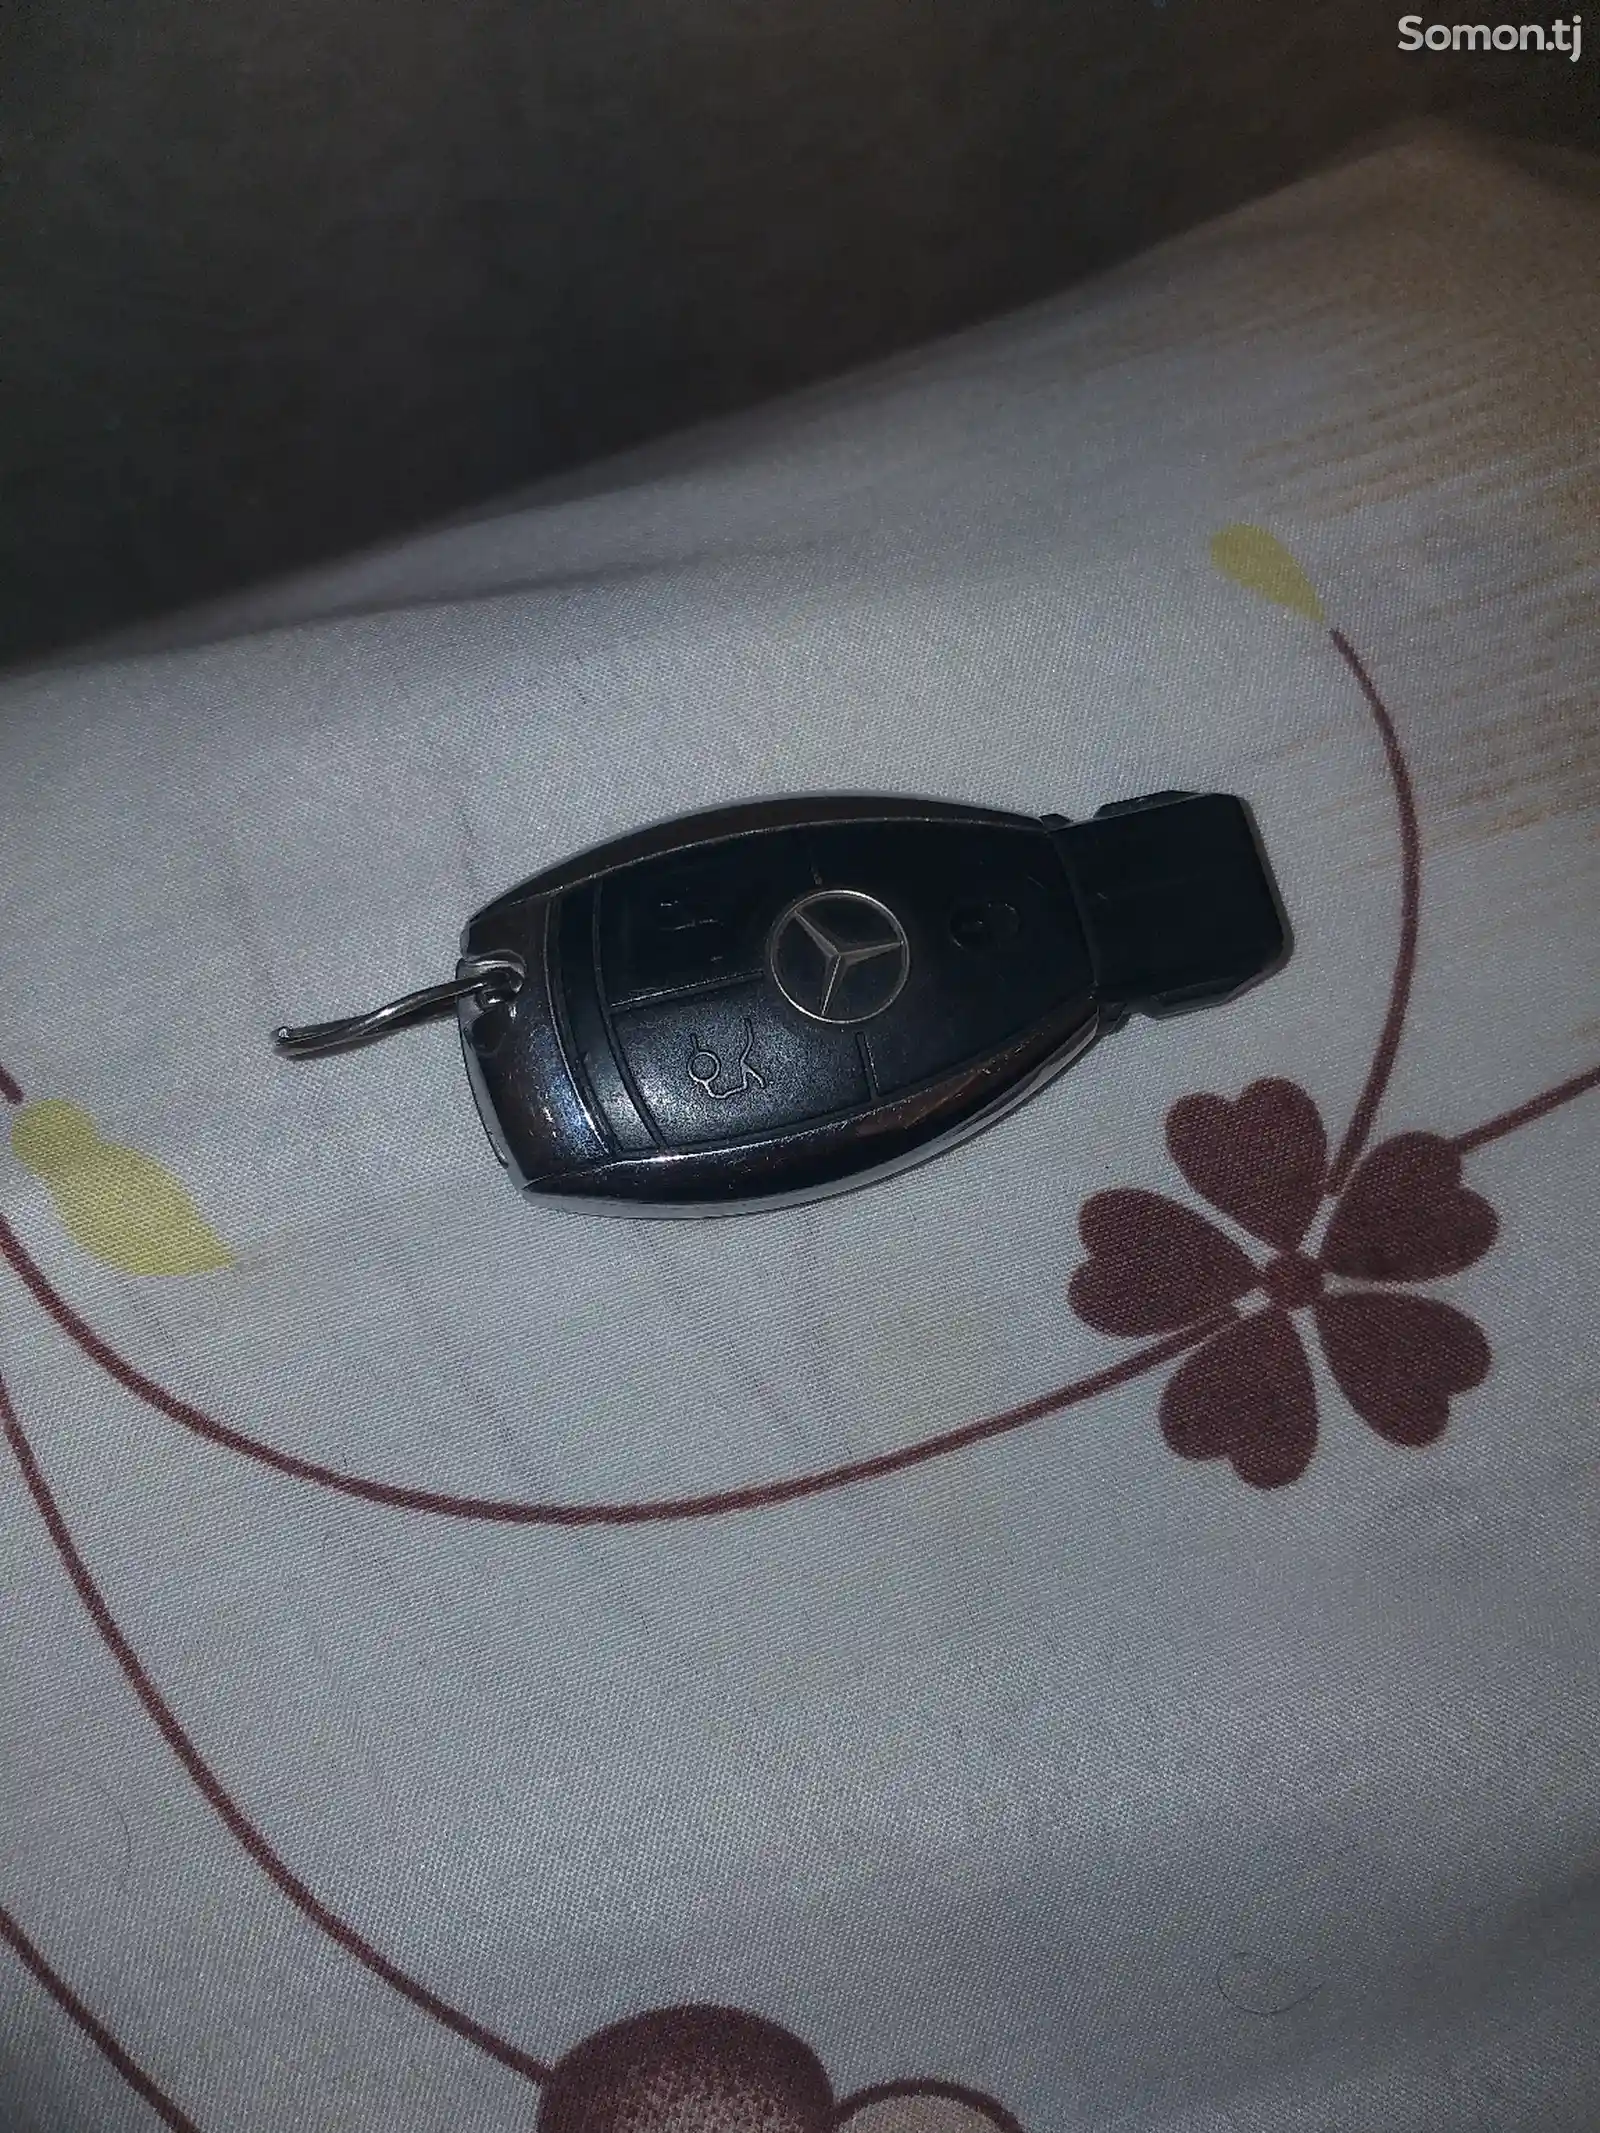 Ключи от Mercedes Benz-3